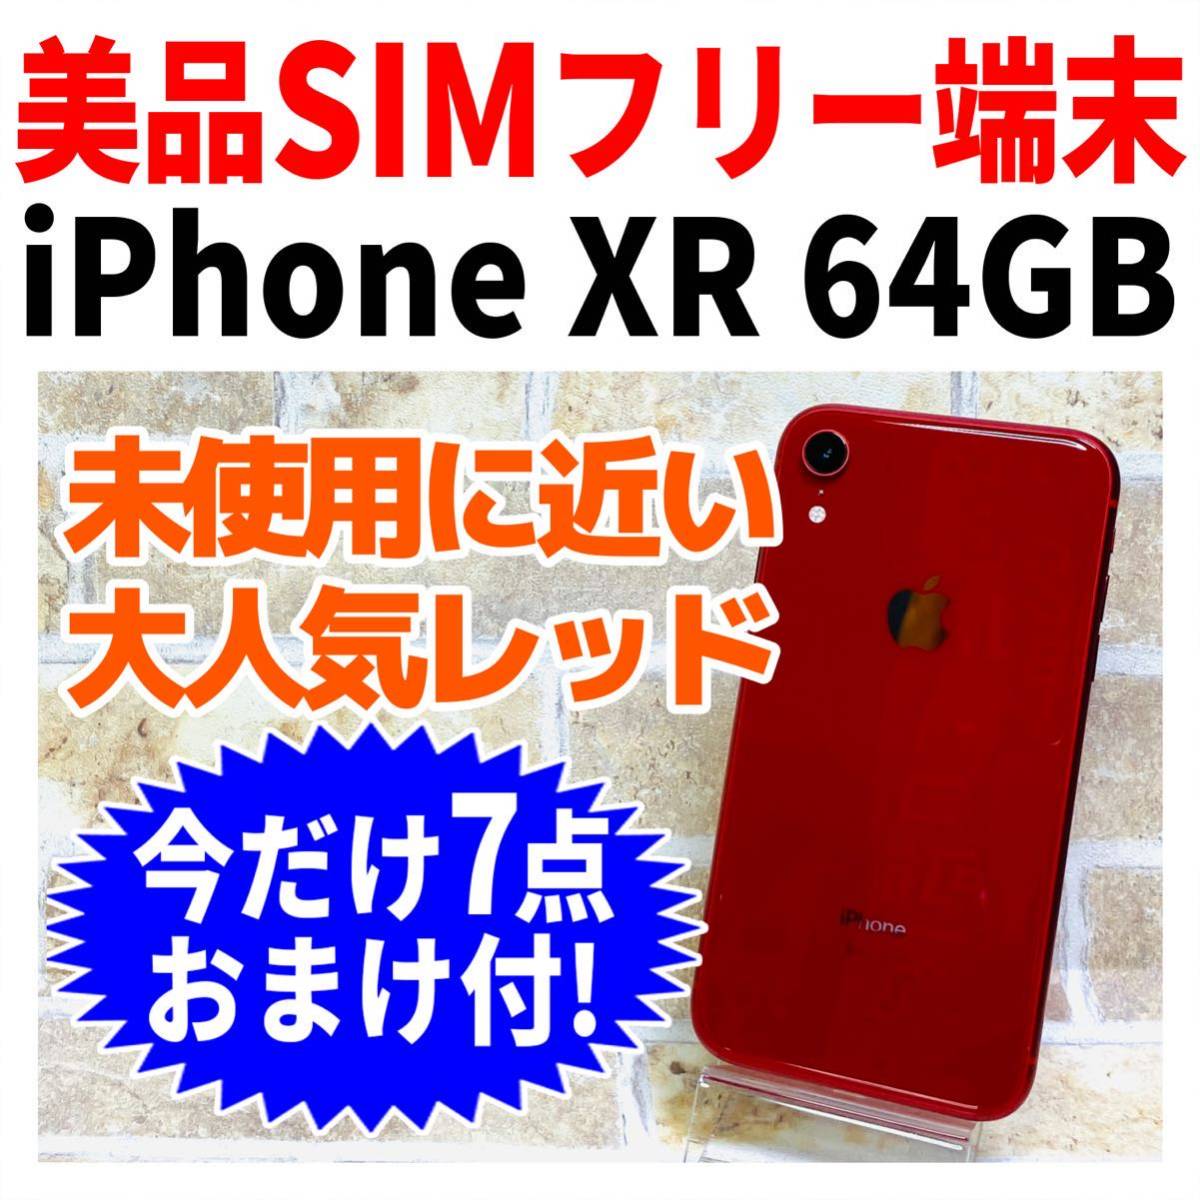 東京工場 iPhone simフリー 64GB RED Product XR スマートフォン本体